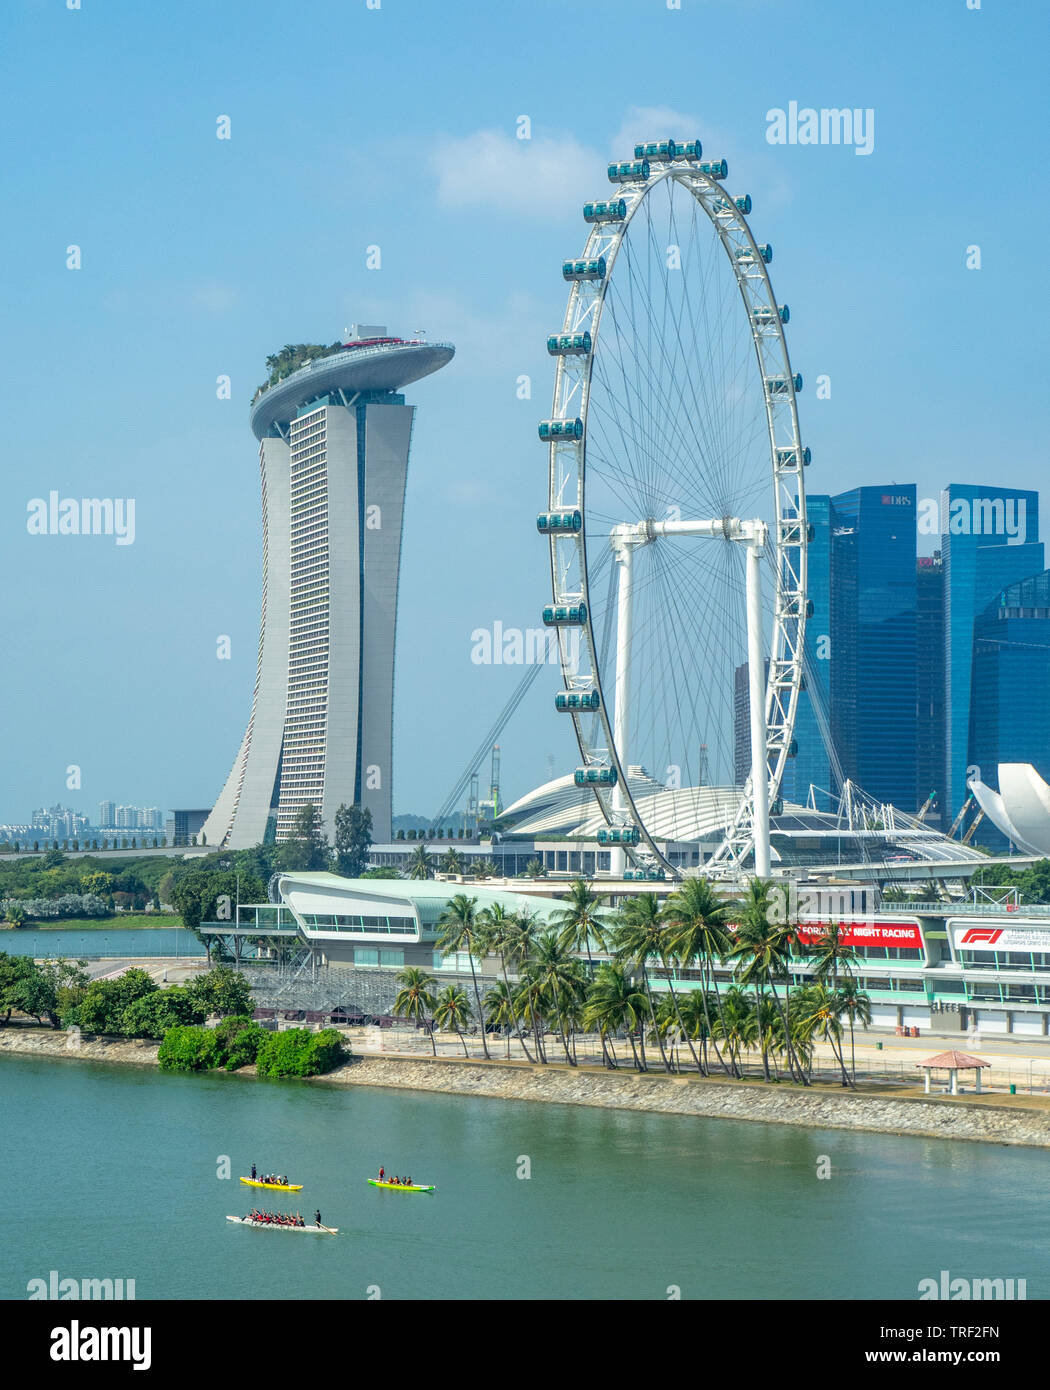 Marina Bay Sands, Singapur Flyer Riesenrad und motorsport Grand Prix GP Boxenstopp Einrichtungen an der Marina Bay in Singapur. Stockfoto